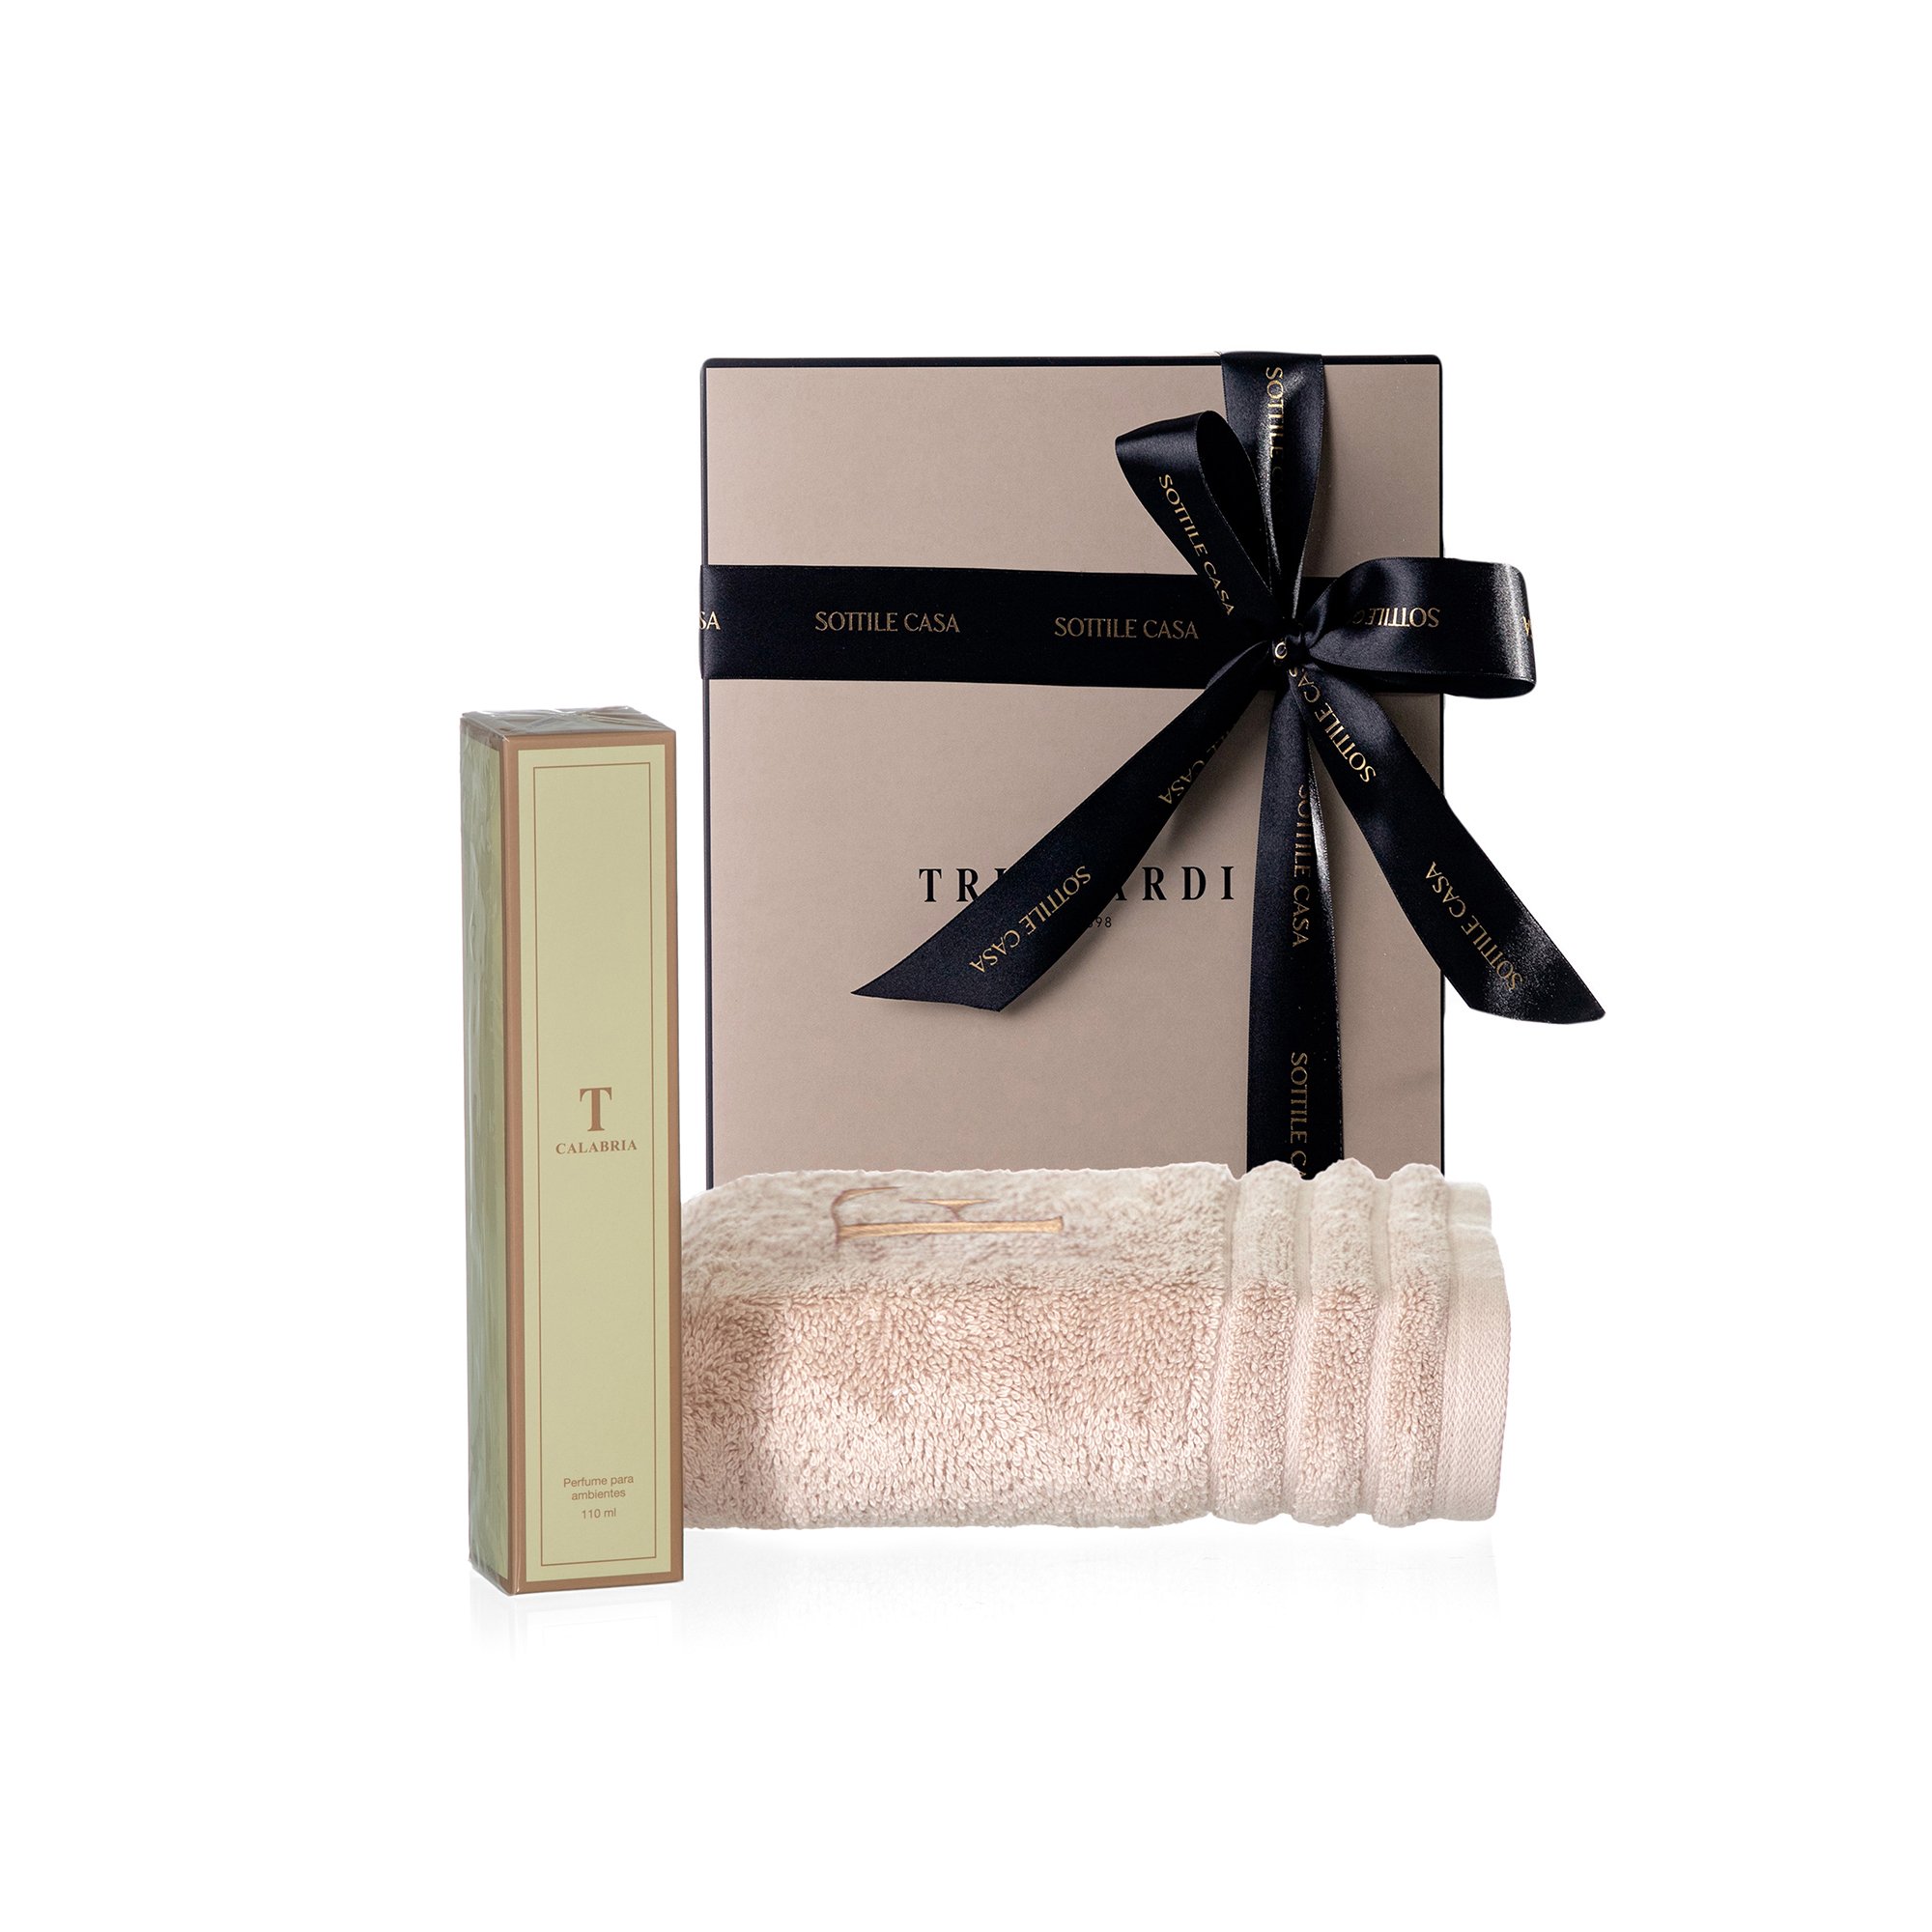 kit toalha de rosto 100 algodao trussardi imperiale nocciola com perfume para ambientes trussardi 200ml calabria com caixa de presente 2